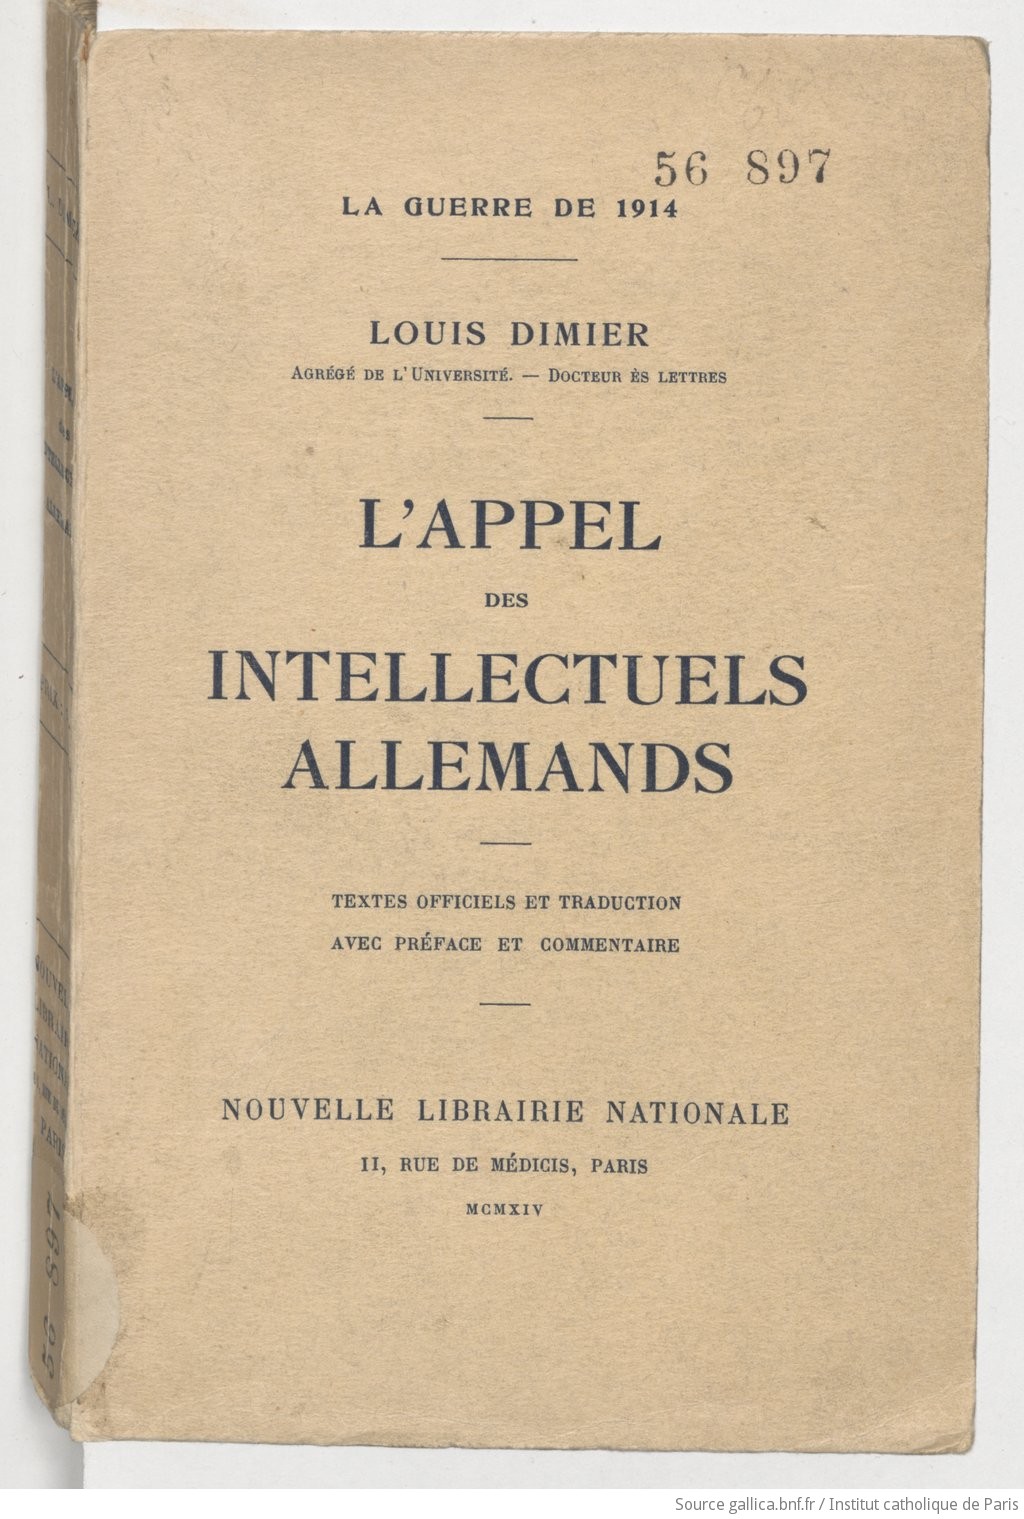 La guerre de 1914. Louis Dimier,... L'Appel des intellectuels allemands...